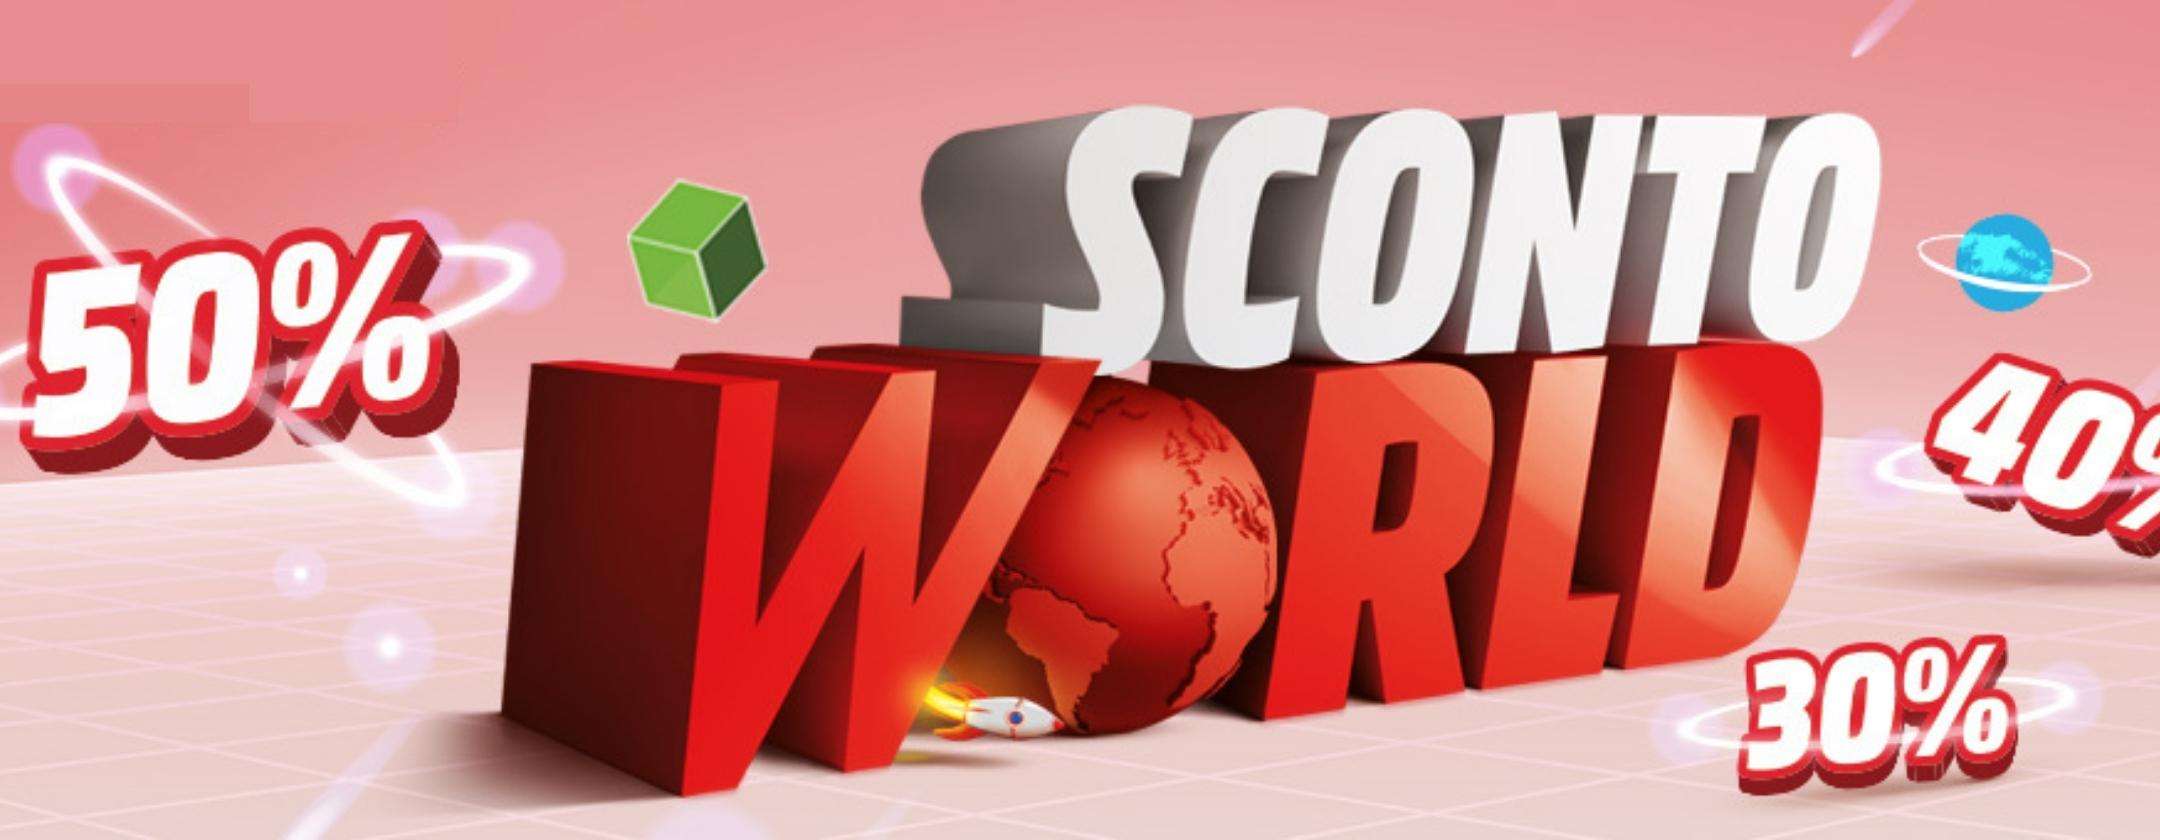 MediaWorld, nuovo volantino Sconto World: sconti fino al 50%